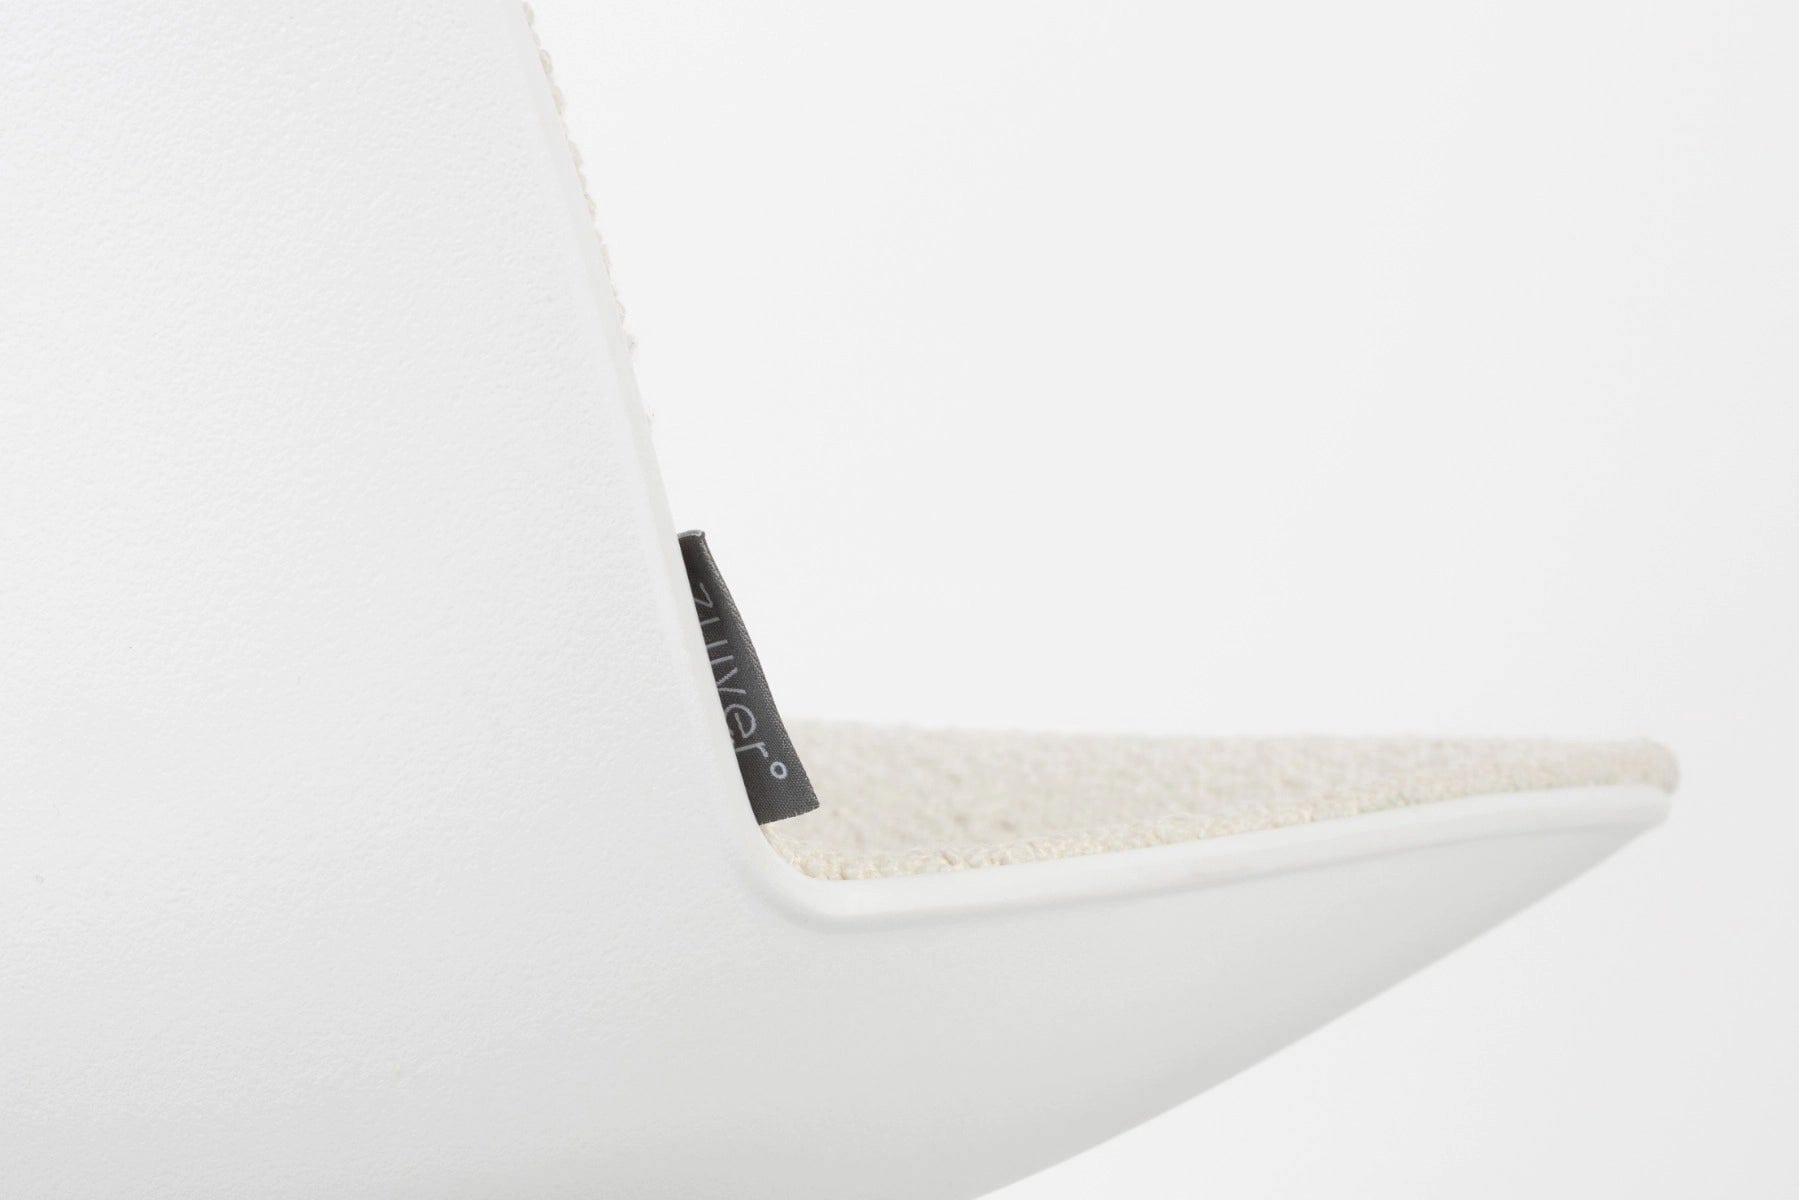 Krzesło na kółkach ALBERT KUIP biały, Zuiver, Eye on Design